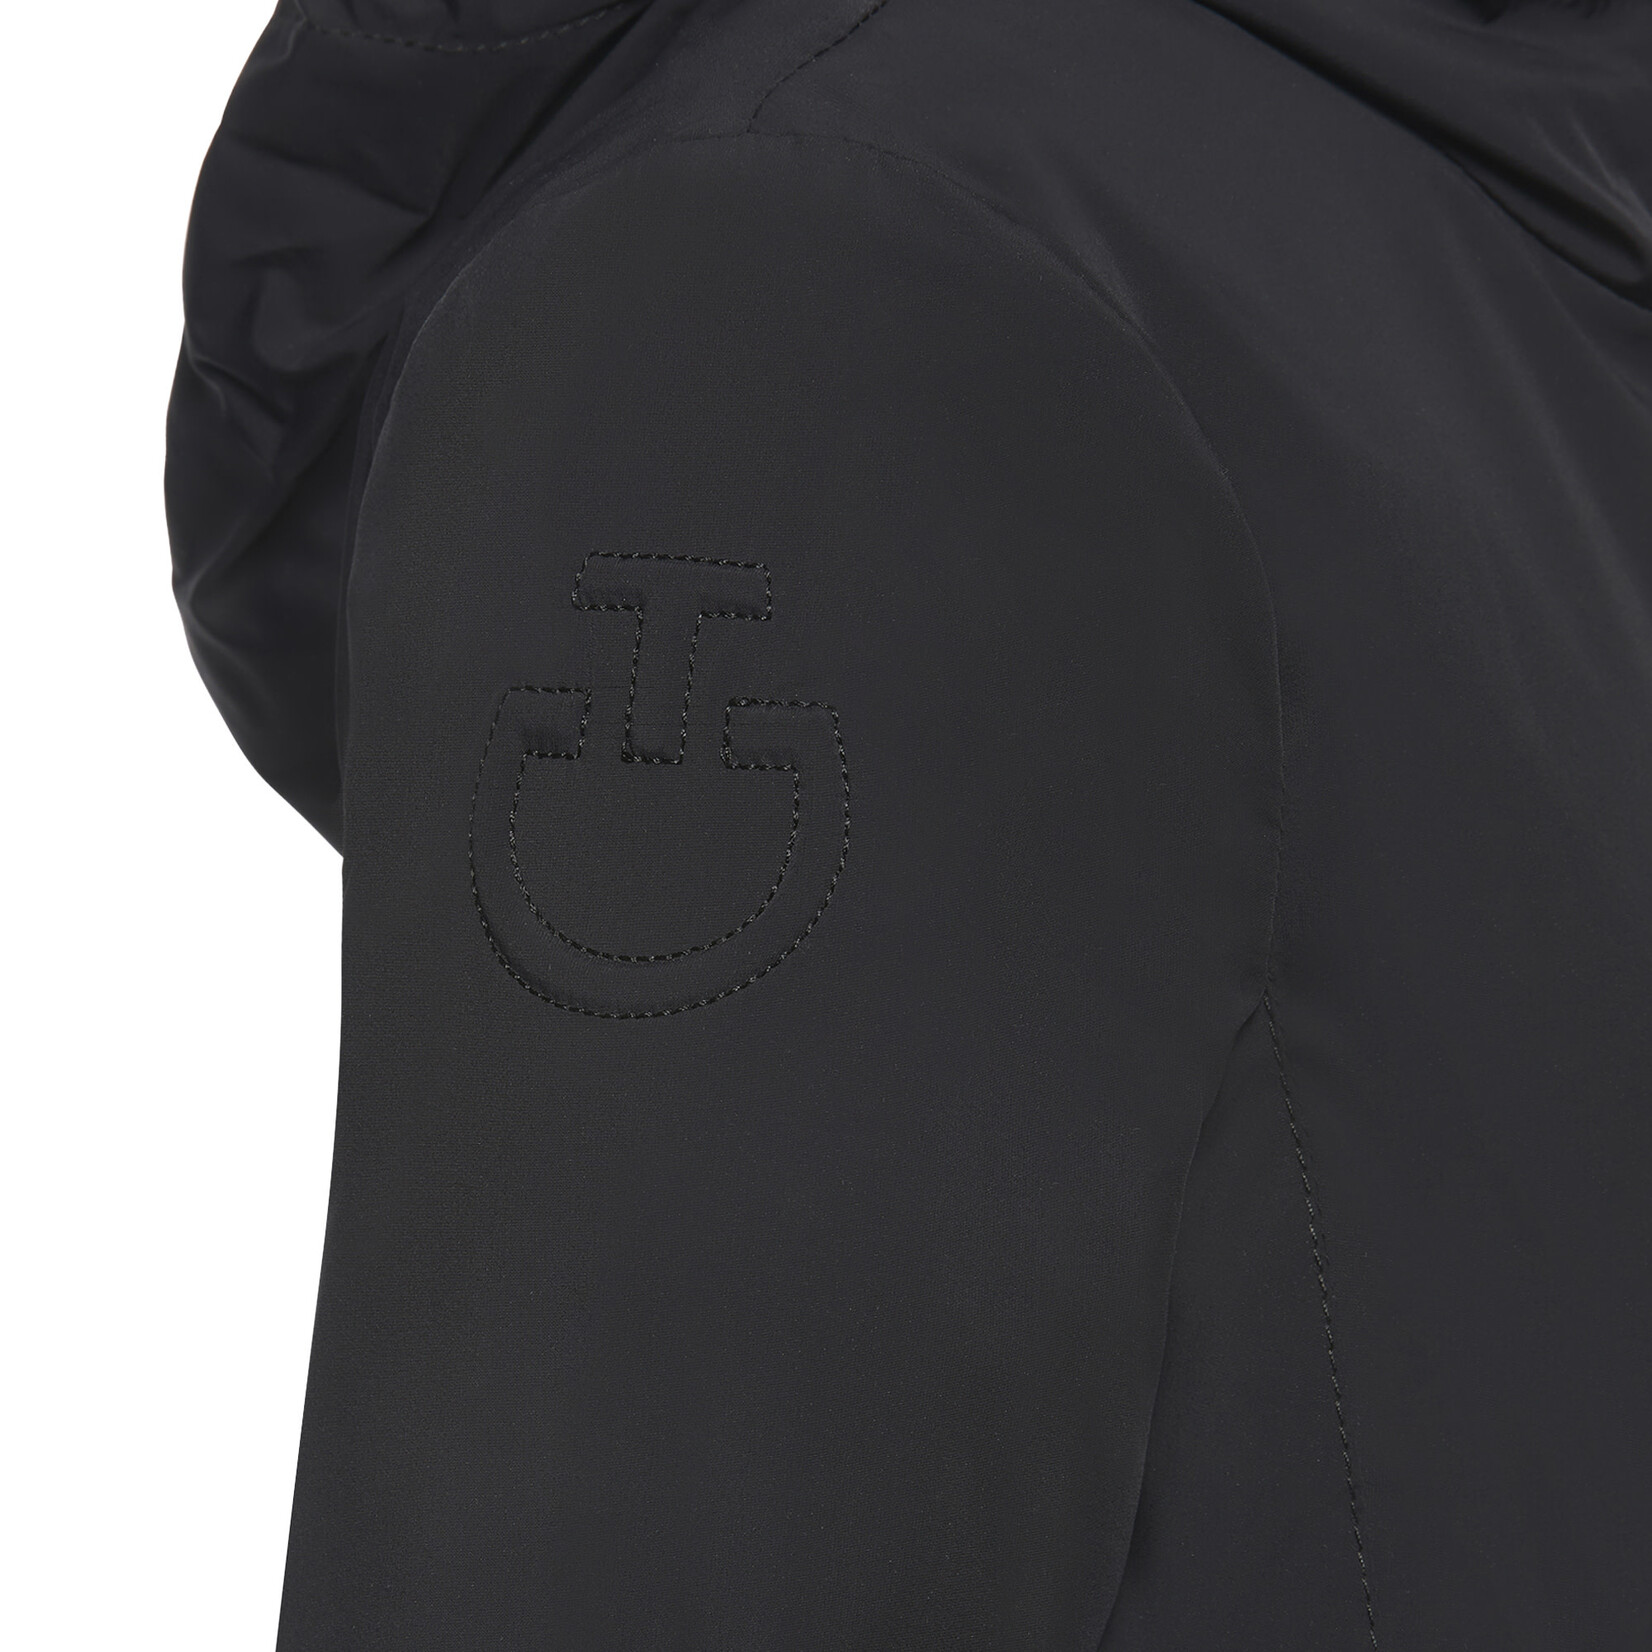 Cavalleria Toscana GIK023 Cavalleria Toscana Junior Waterproof Hooded Zip Jacket